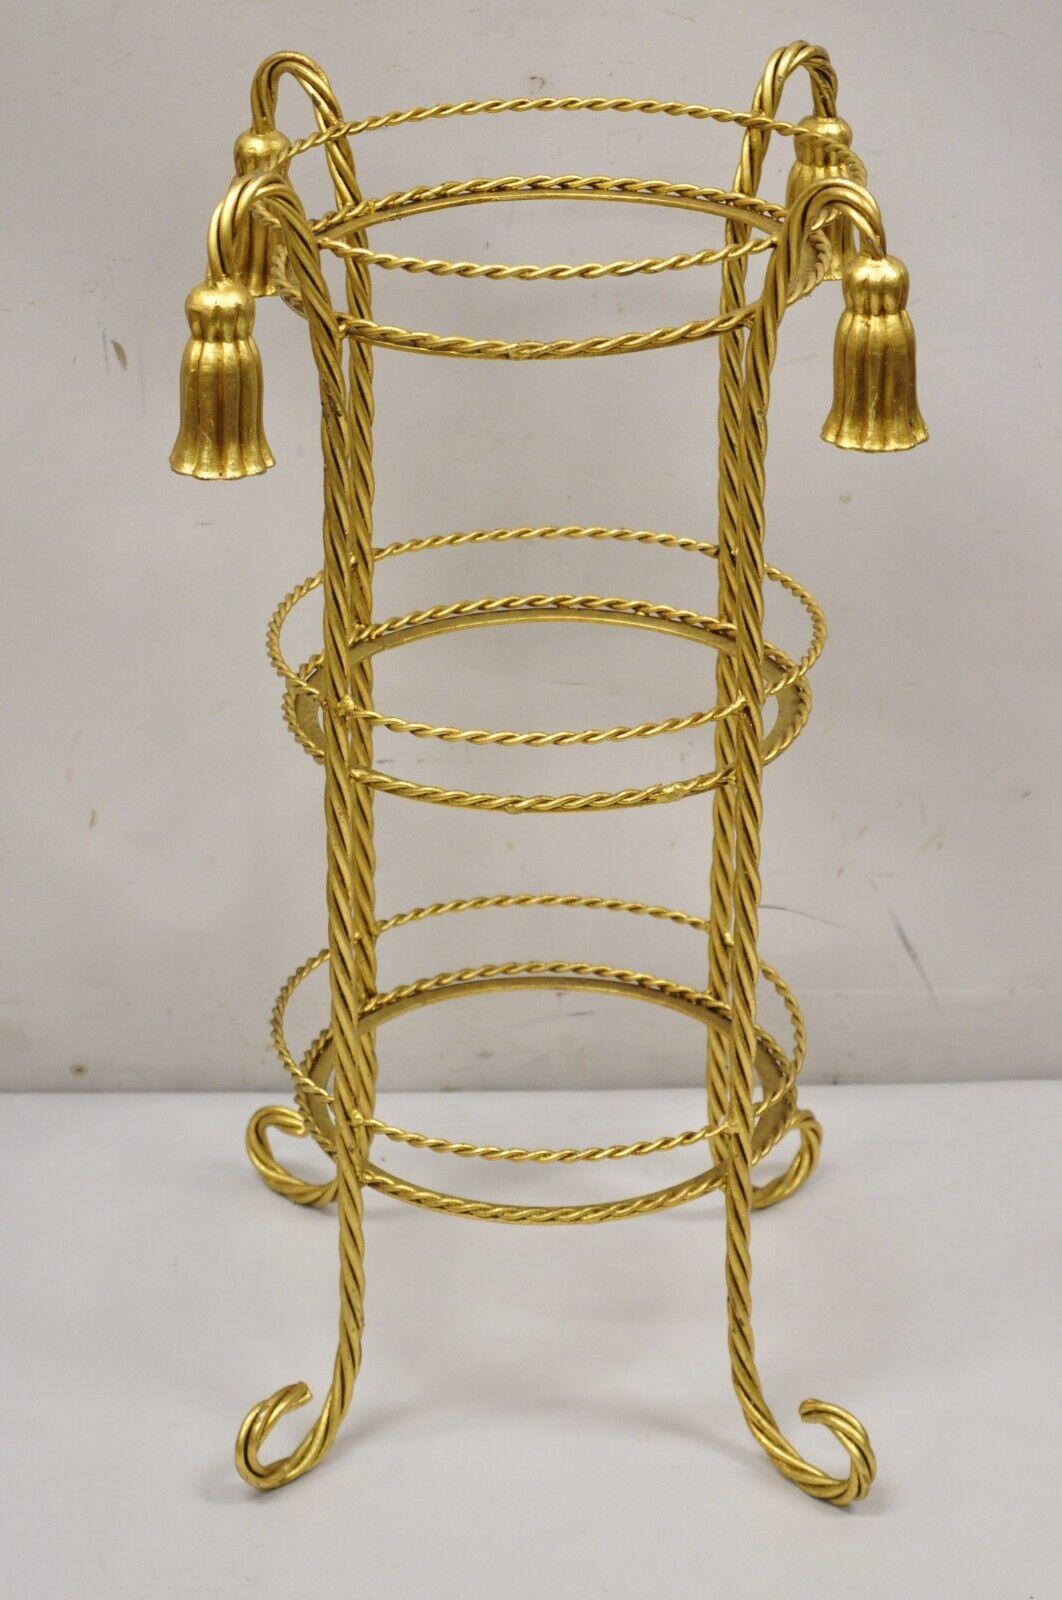 Vintage Italian Hollywood Regency 3 Tier Gold Iron Rope Tassel Muffin Stand Accent Side Tables - Single. Der Artikel hat 3 runde Etagen (ca. 11,25 Durchmesser). Enthält kein Glas). Eisen-Metallrahmen, Blattgold vergoldet, Quaste Form Akzente,